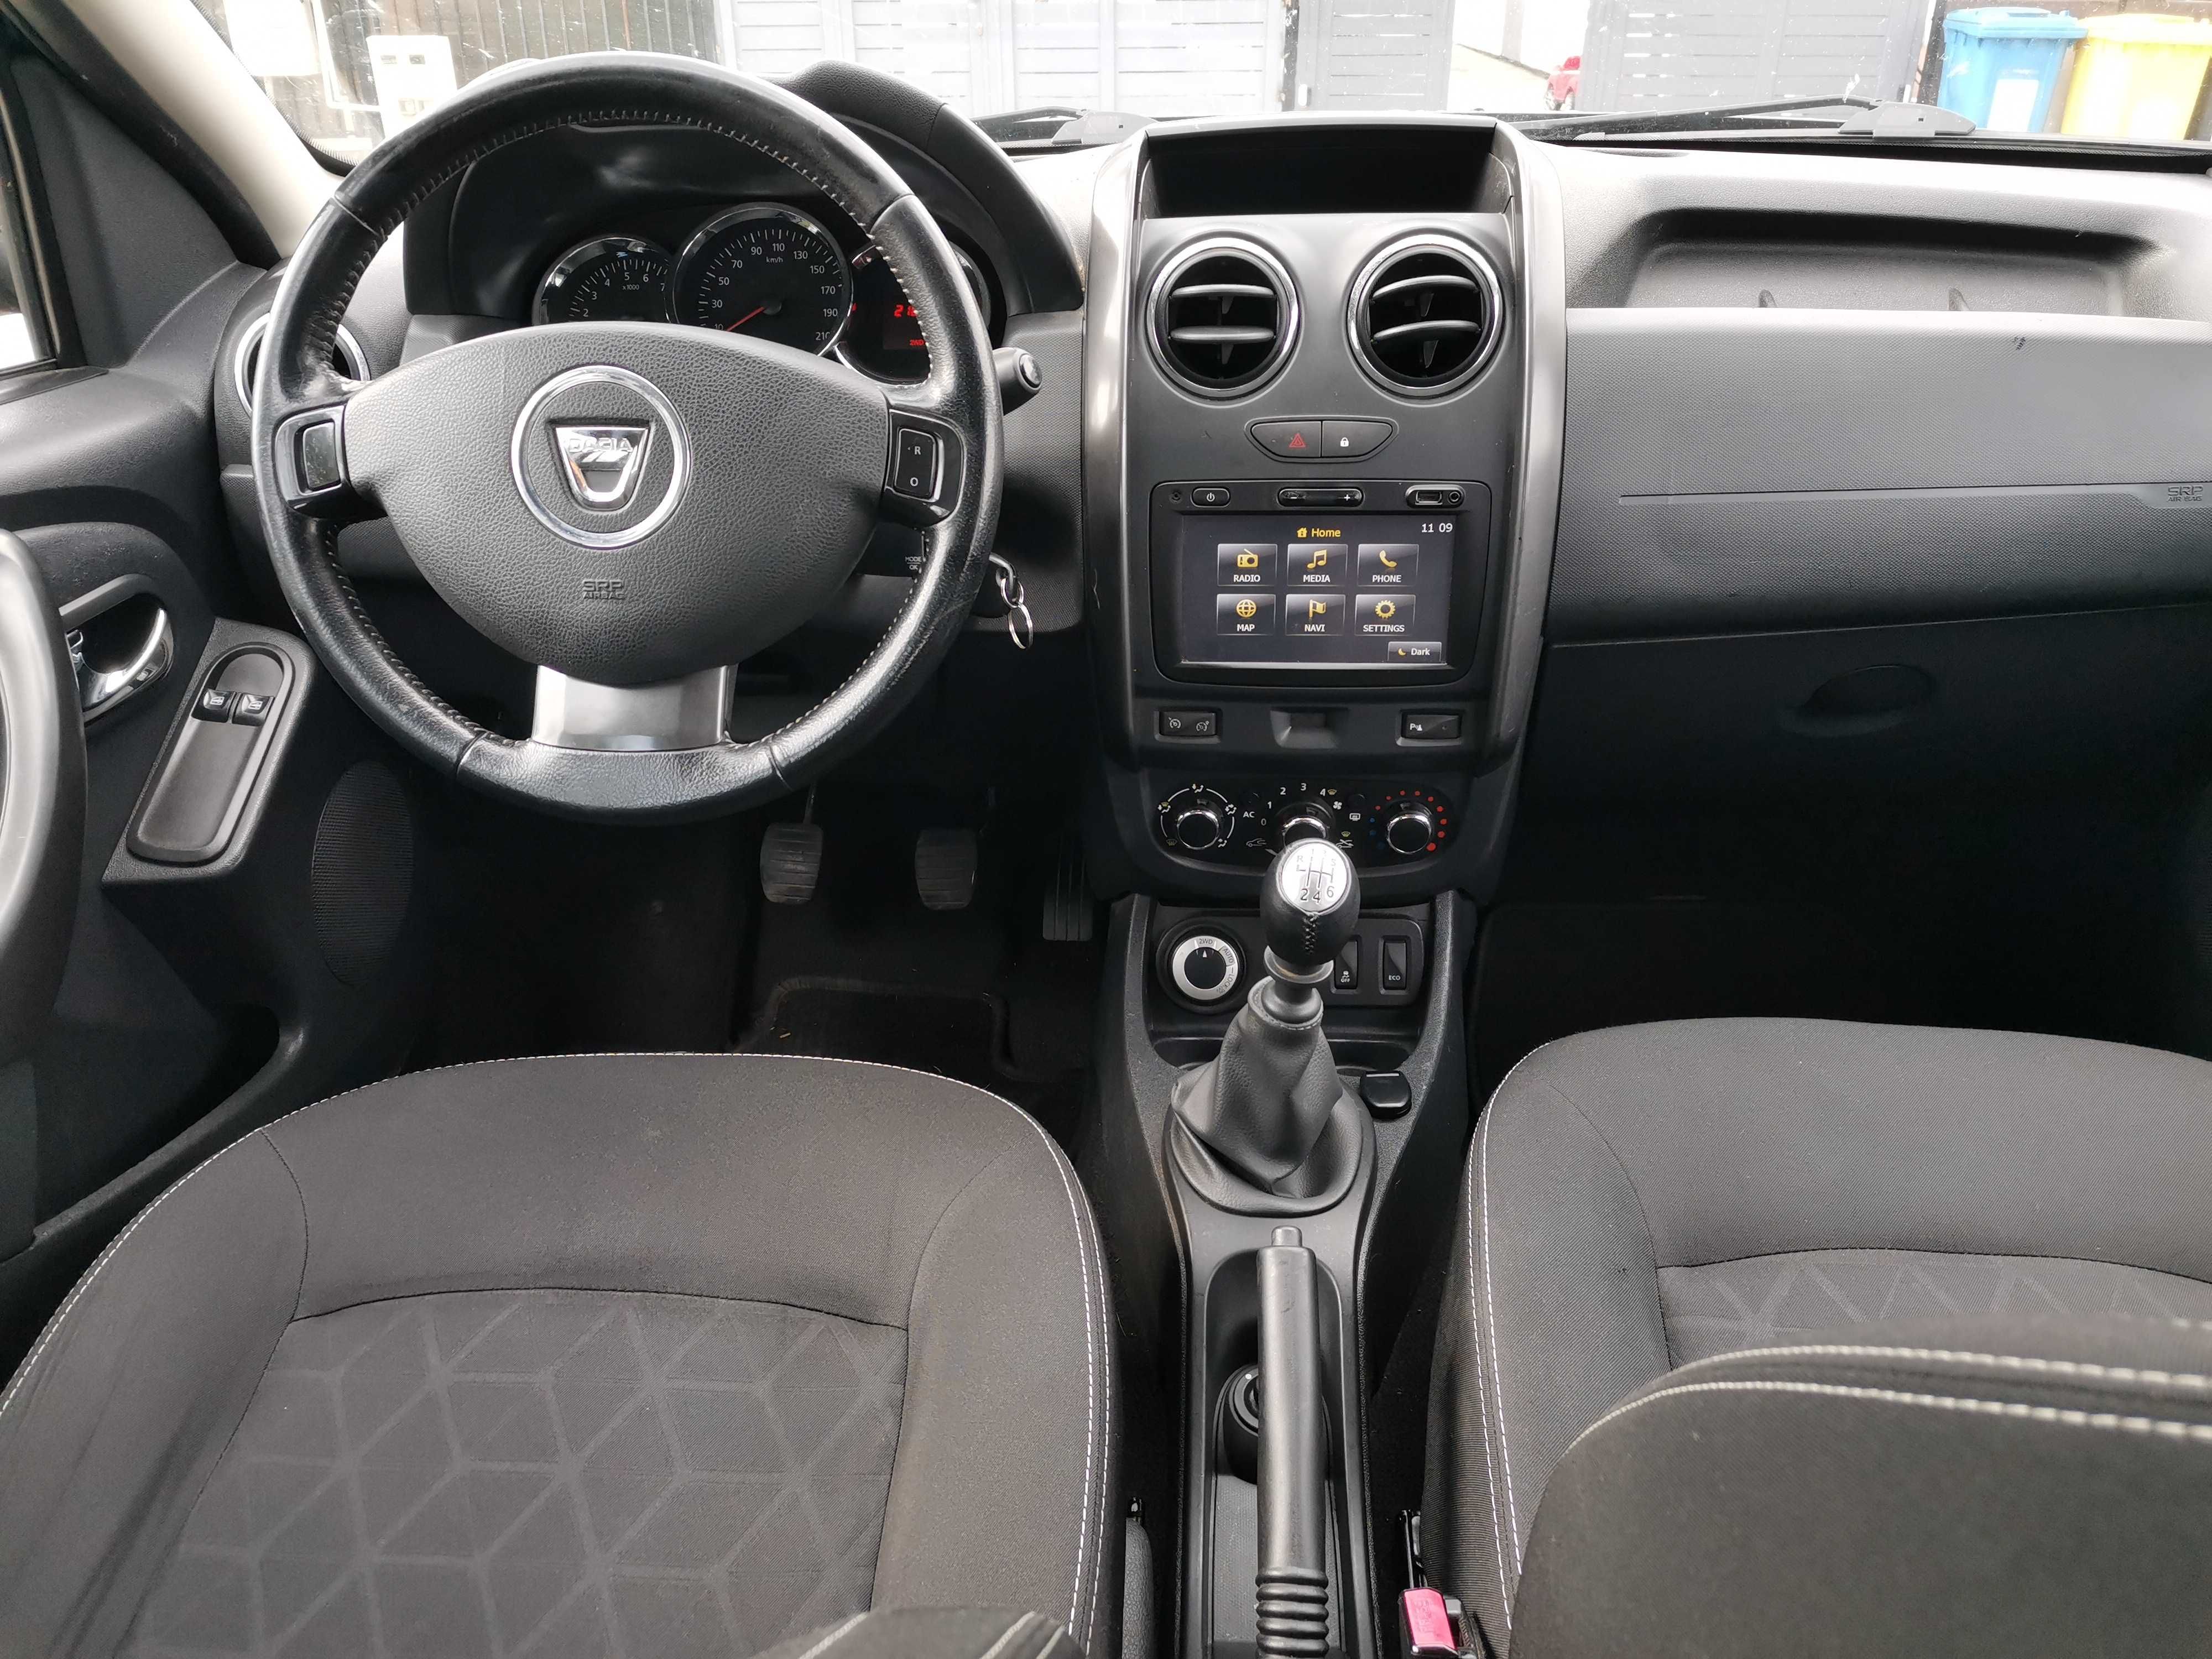 Dacia Duster 2015, 4x4, 1.5 Dci-110 cp, navigatie